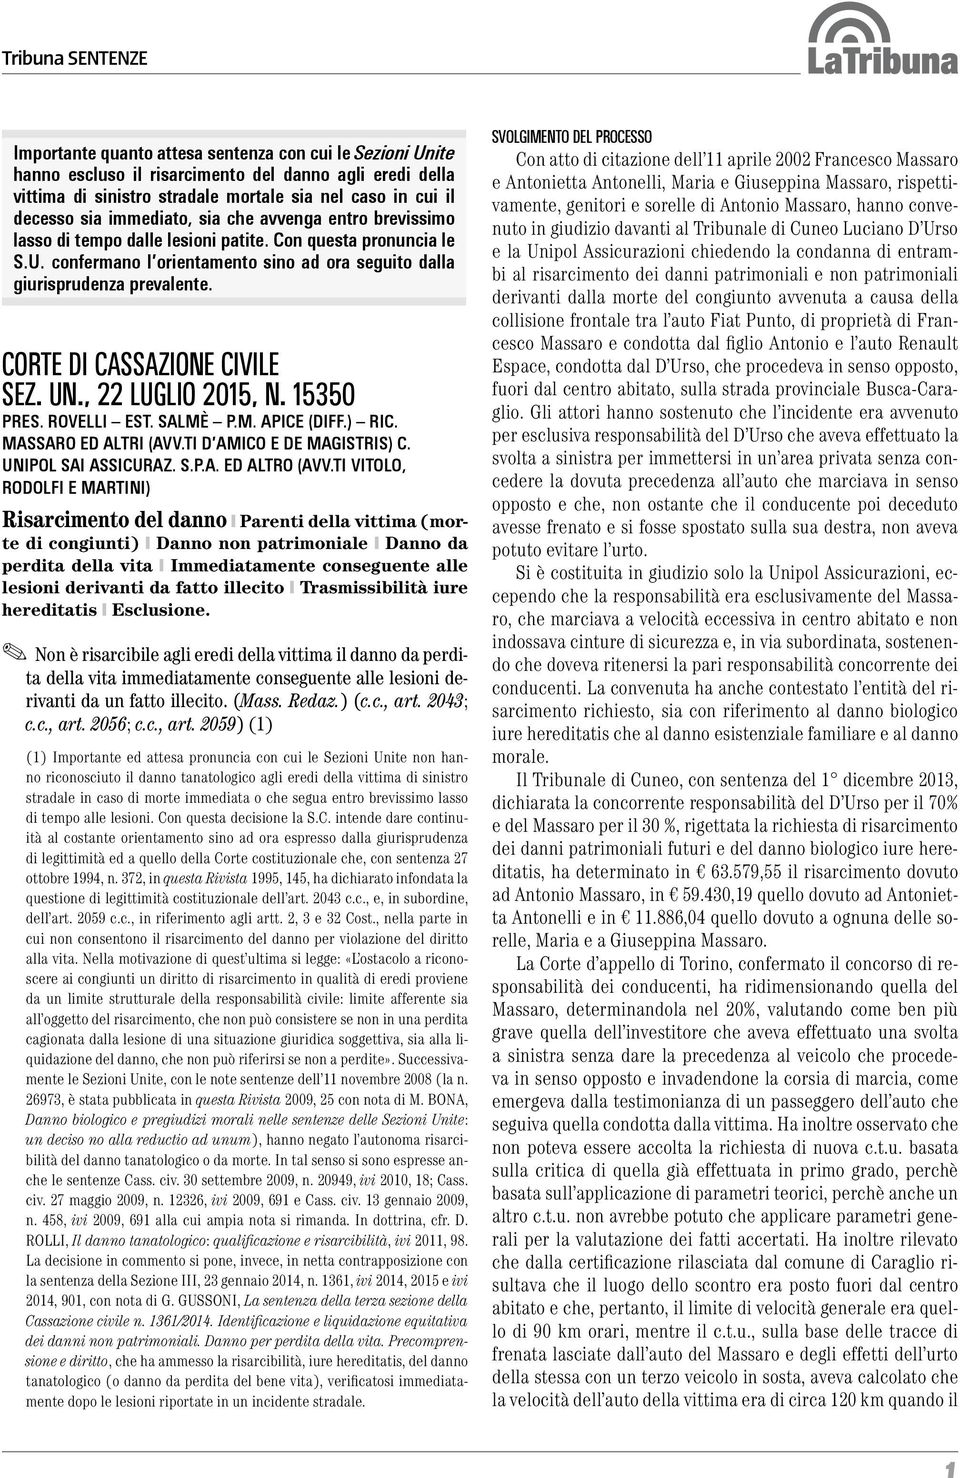 CORTE DI CASSAZIONE CIVILE SEZ. UN., 22 LUGLIO 2015, N. 15350 PRES. ROVELLI EST. SALMÈ P.M. APICE (DIFF.) RIC. MASSARO ED ALTRI (AVV.TI D AMICO E DE MAGISTRIS) C. UNIPOL SAI ASSICURAZ. S.P.A. ED ALTRO (AVV.